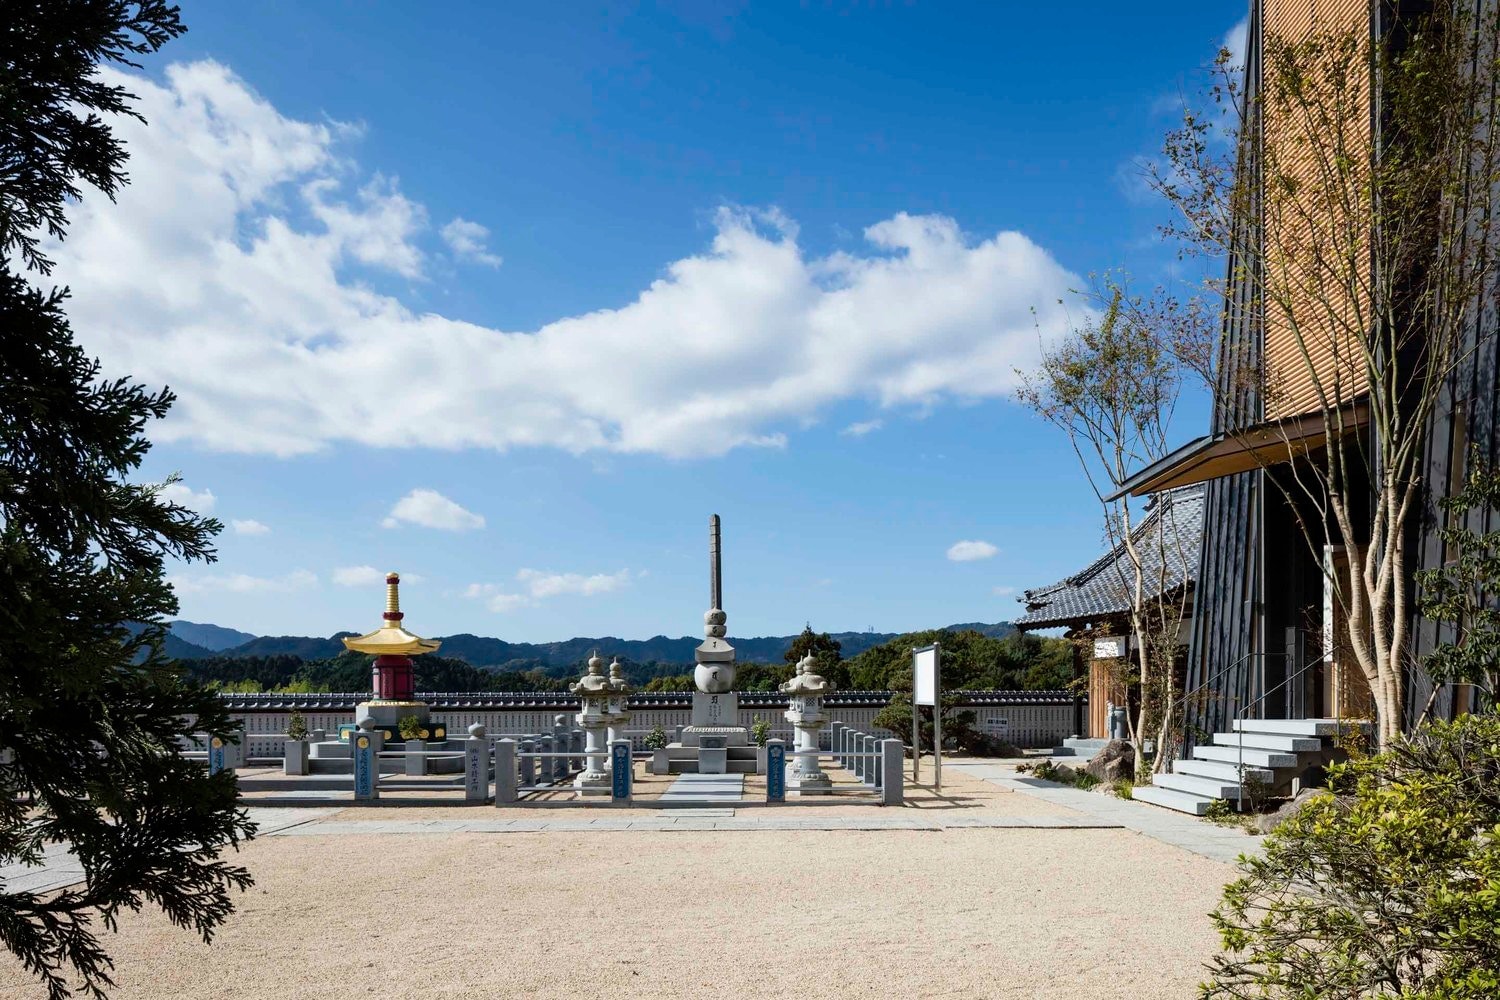 建築設計公司 Takashi Okuno 於日本打造摩登寺廟